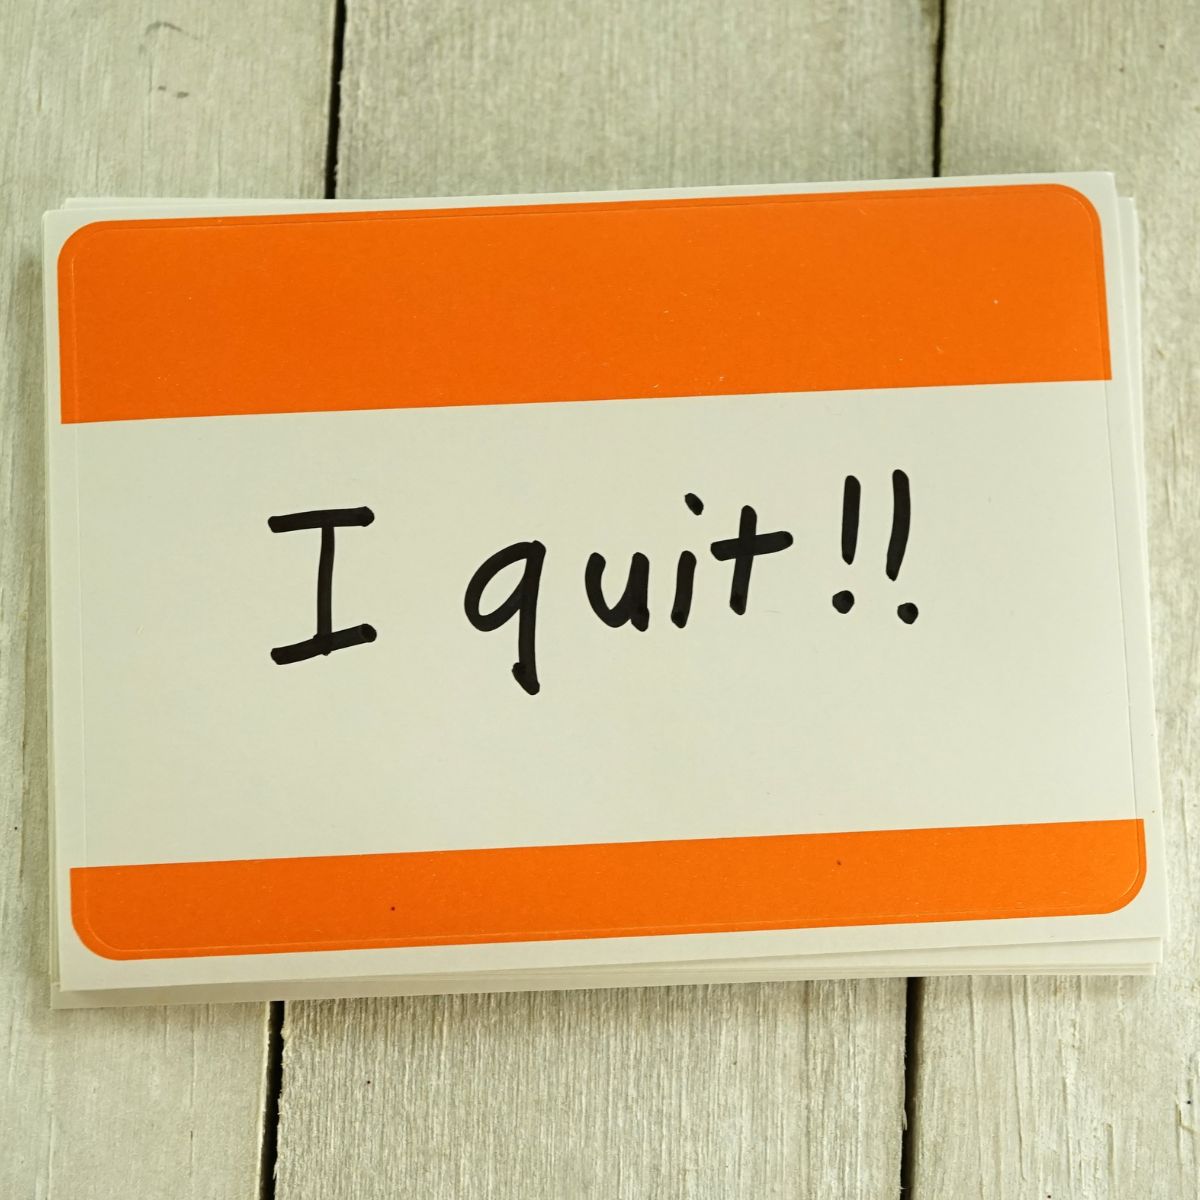 Quit. Quiet quitting